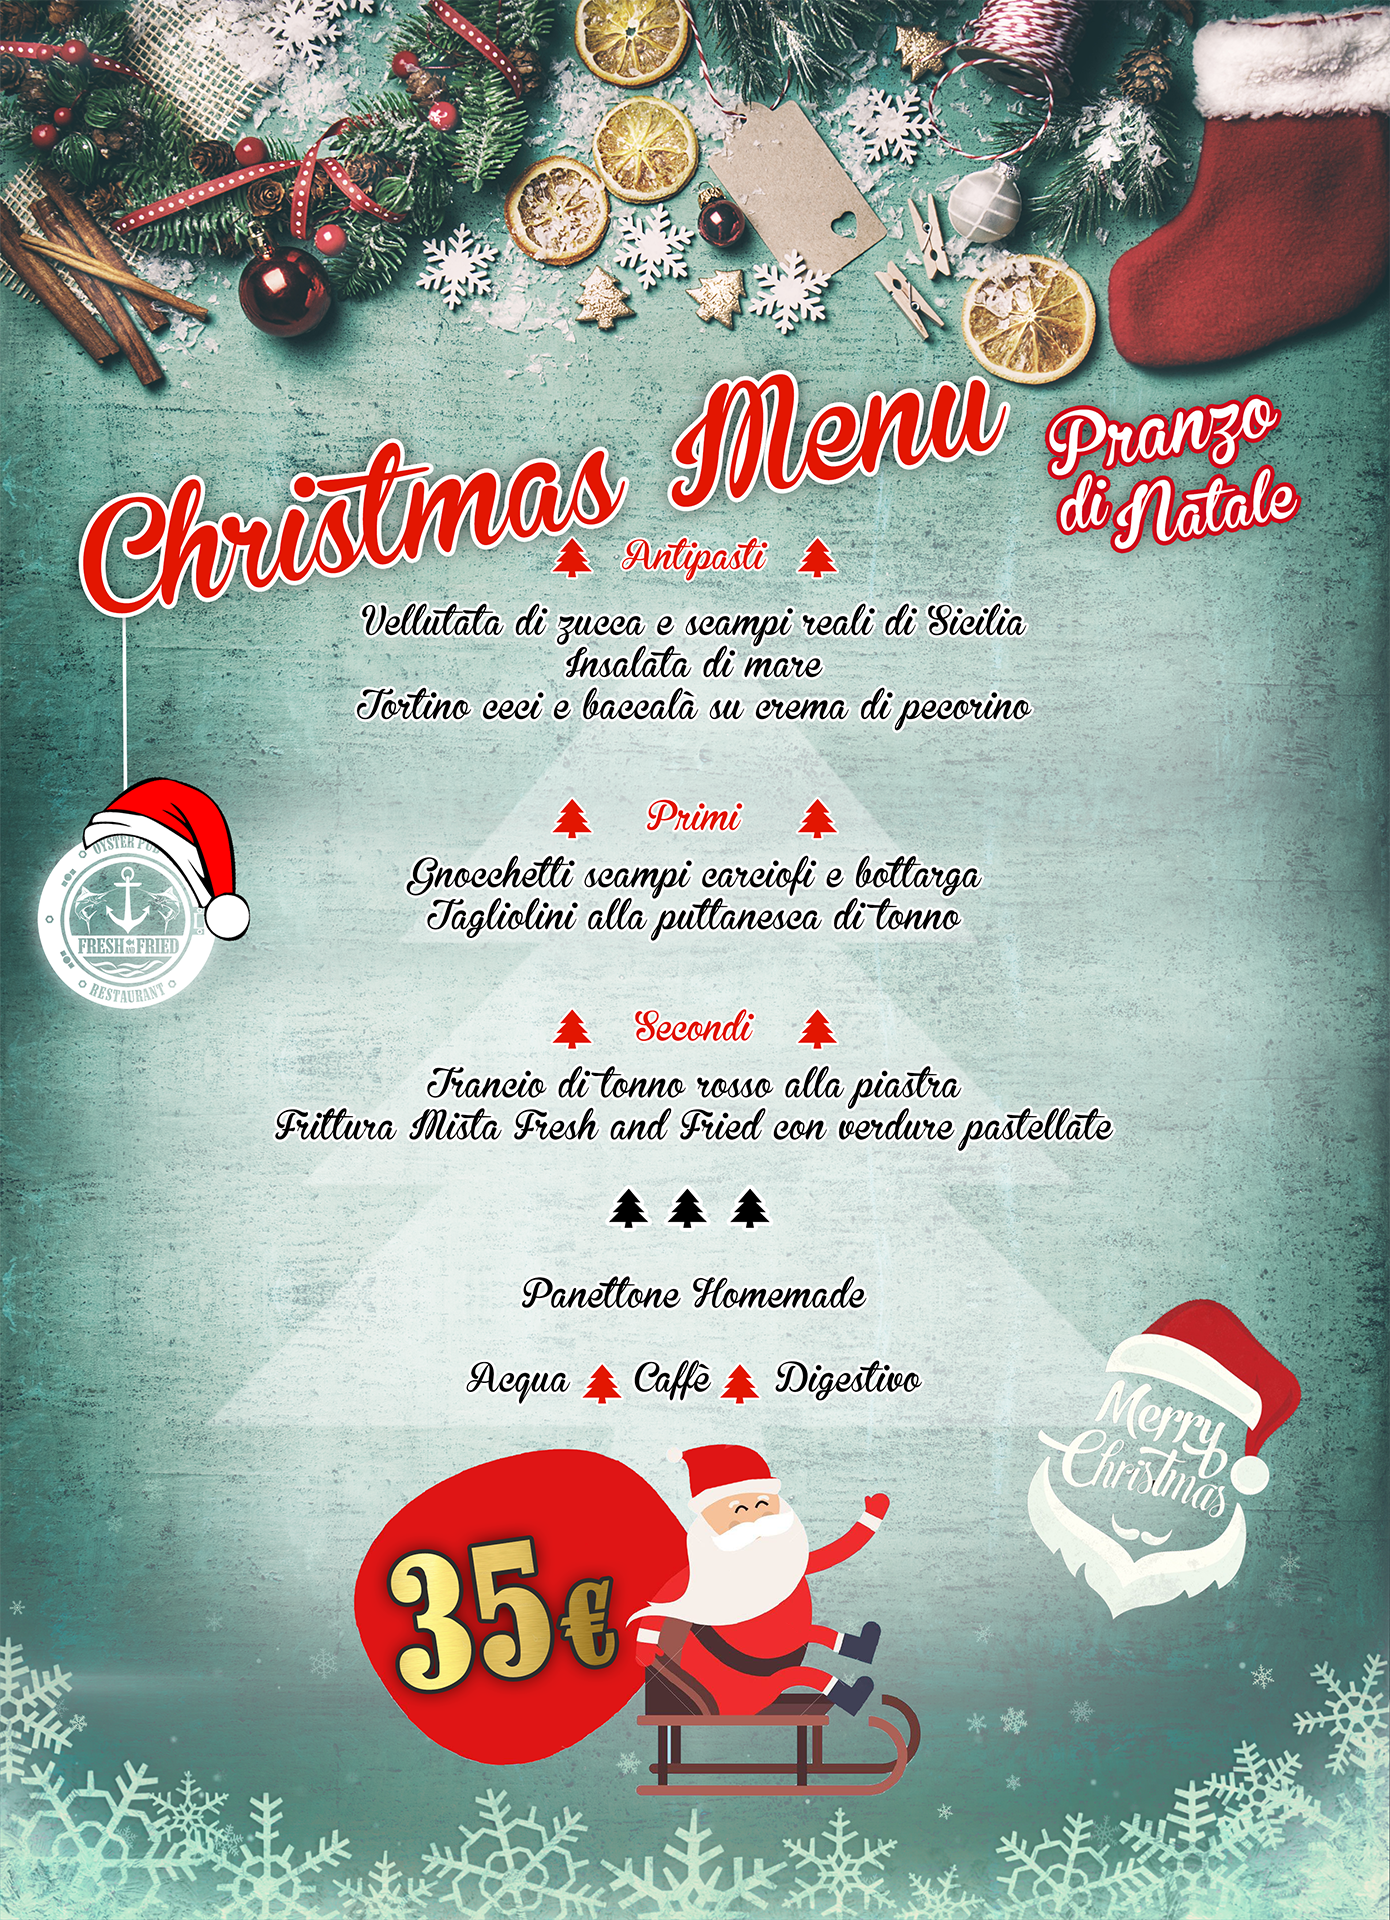 25 Dicembre Natale.Fresh And Christmas Christmas Menu 25 Dicembre Pranzo Di Natale 2018 Fresh And Fried Oysterpub Roma